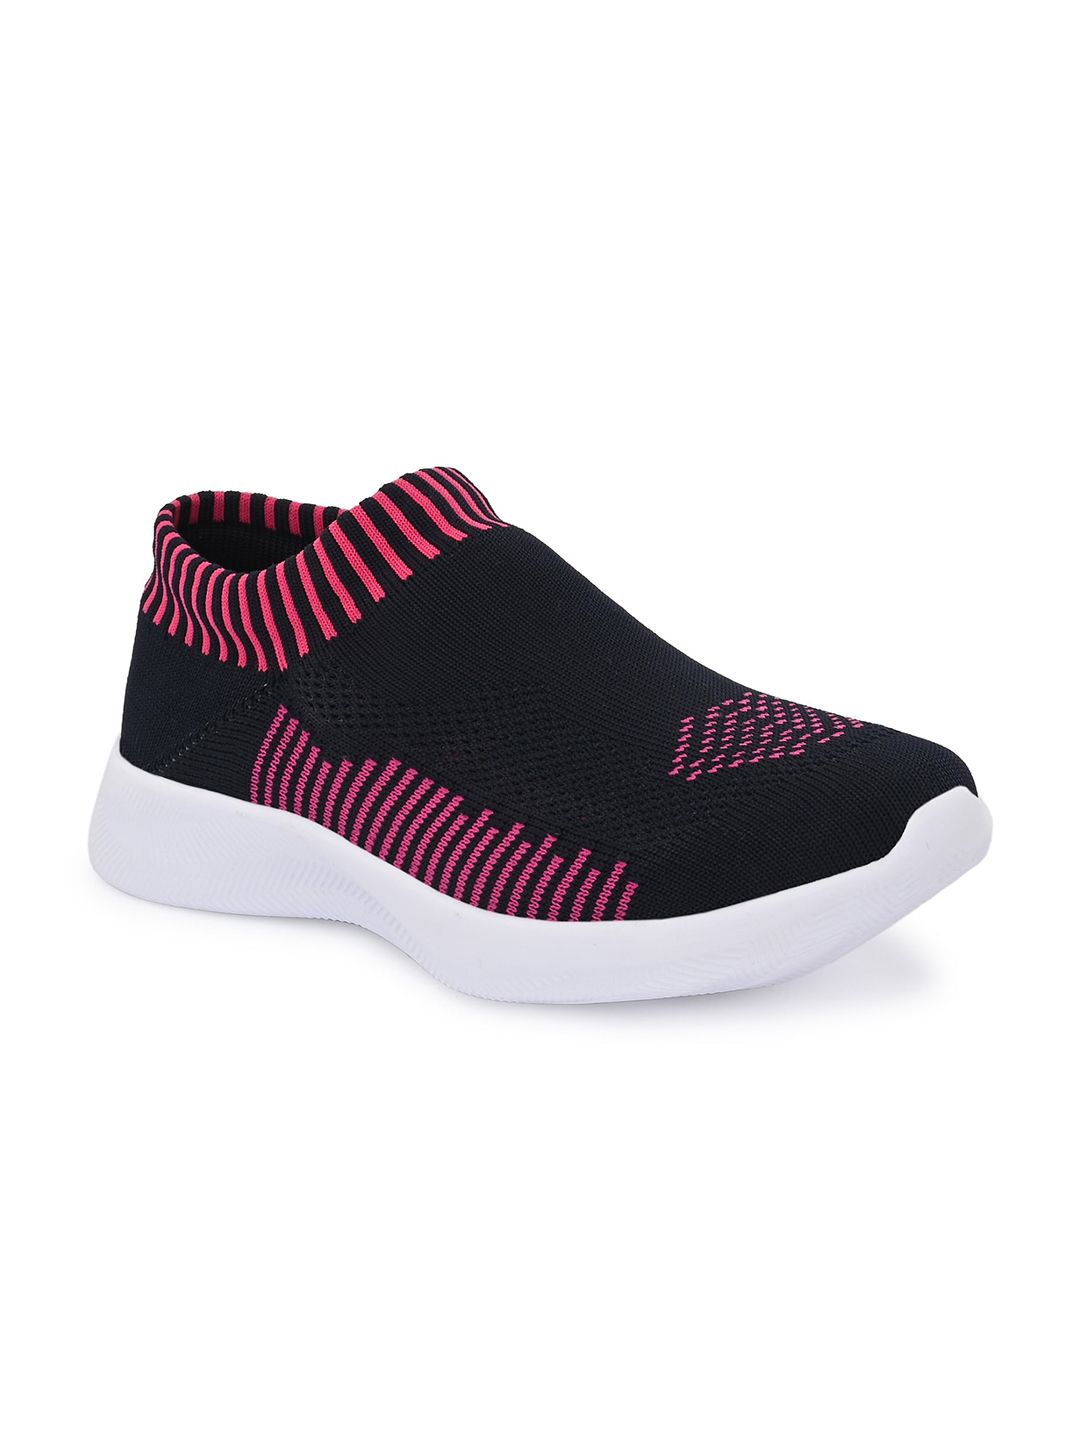 TimberWood Women Black & Pink Textile Walking Non-Marking Shoes Price in India